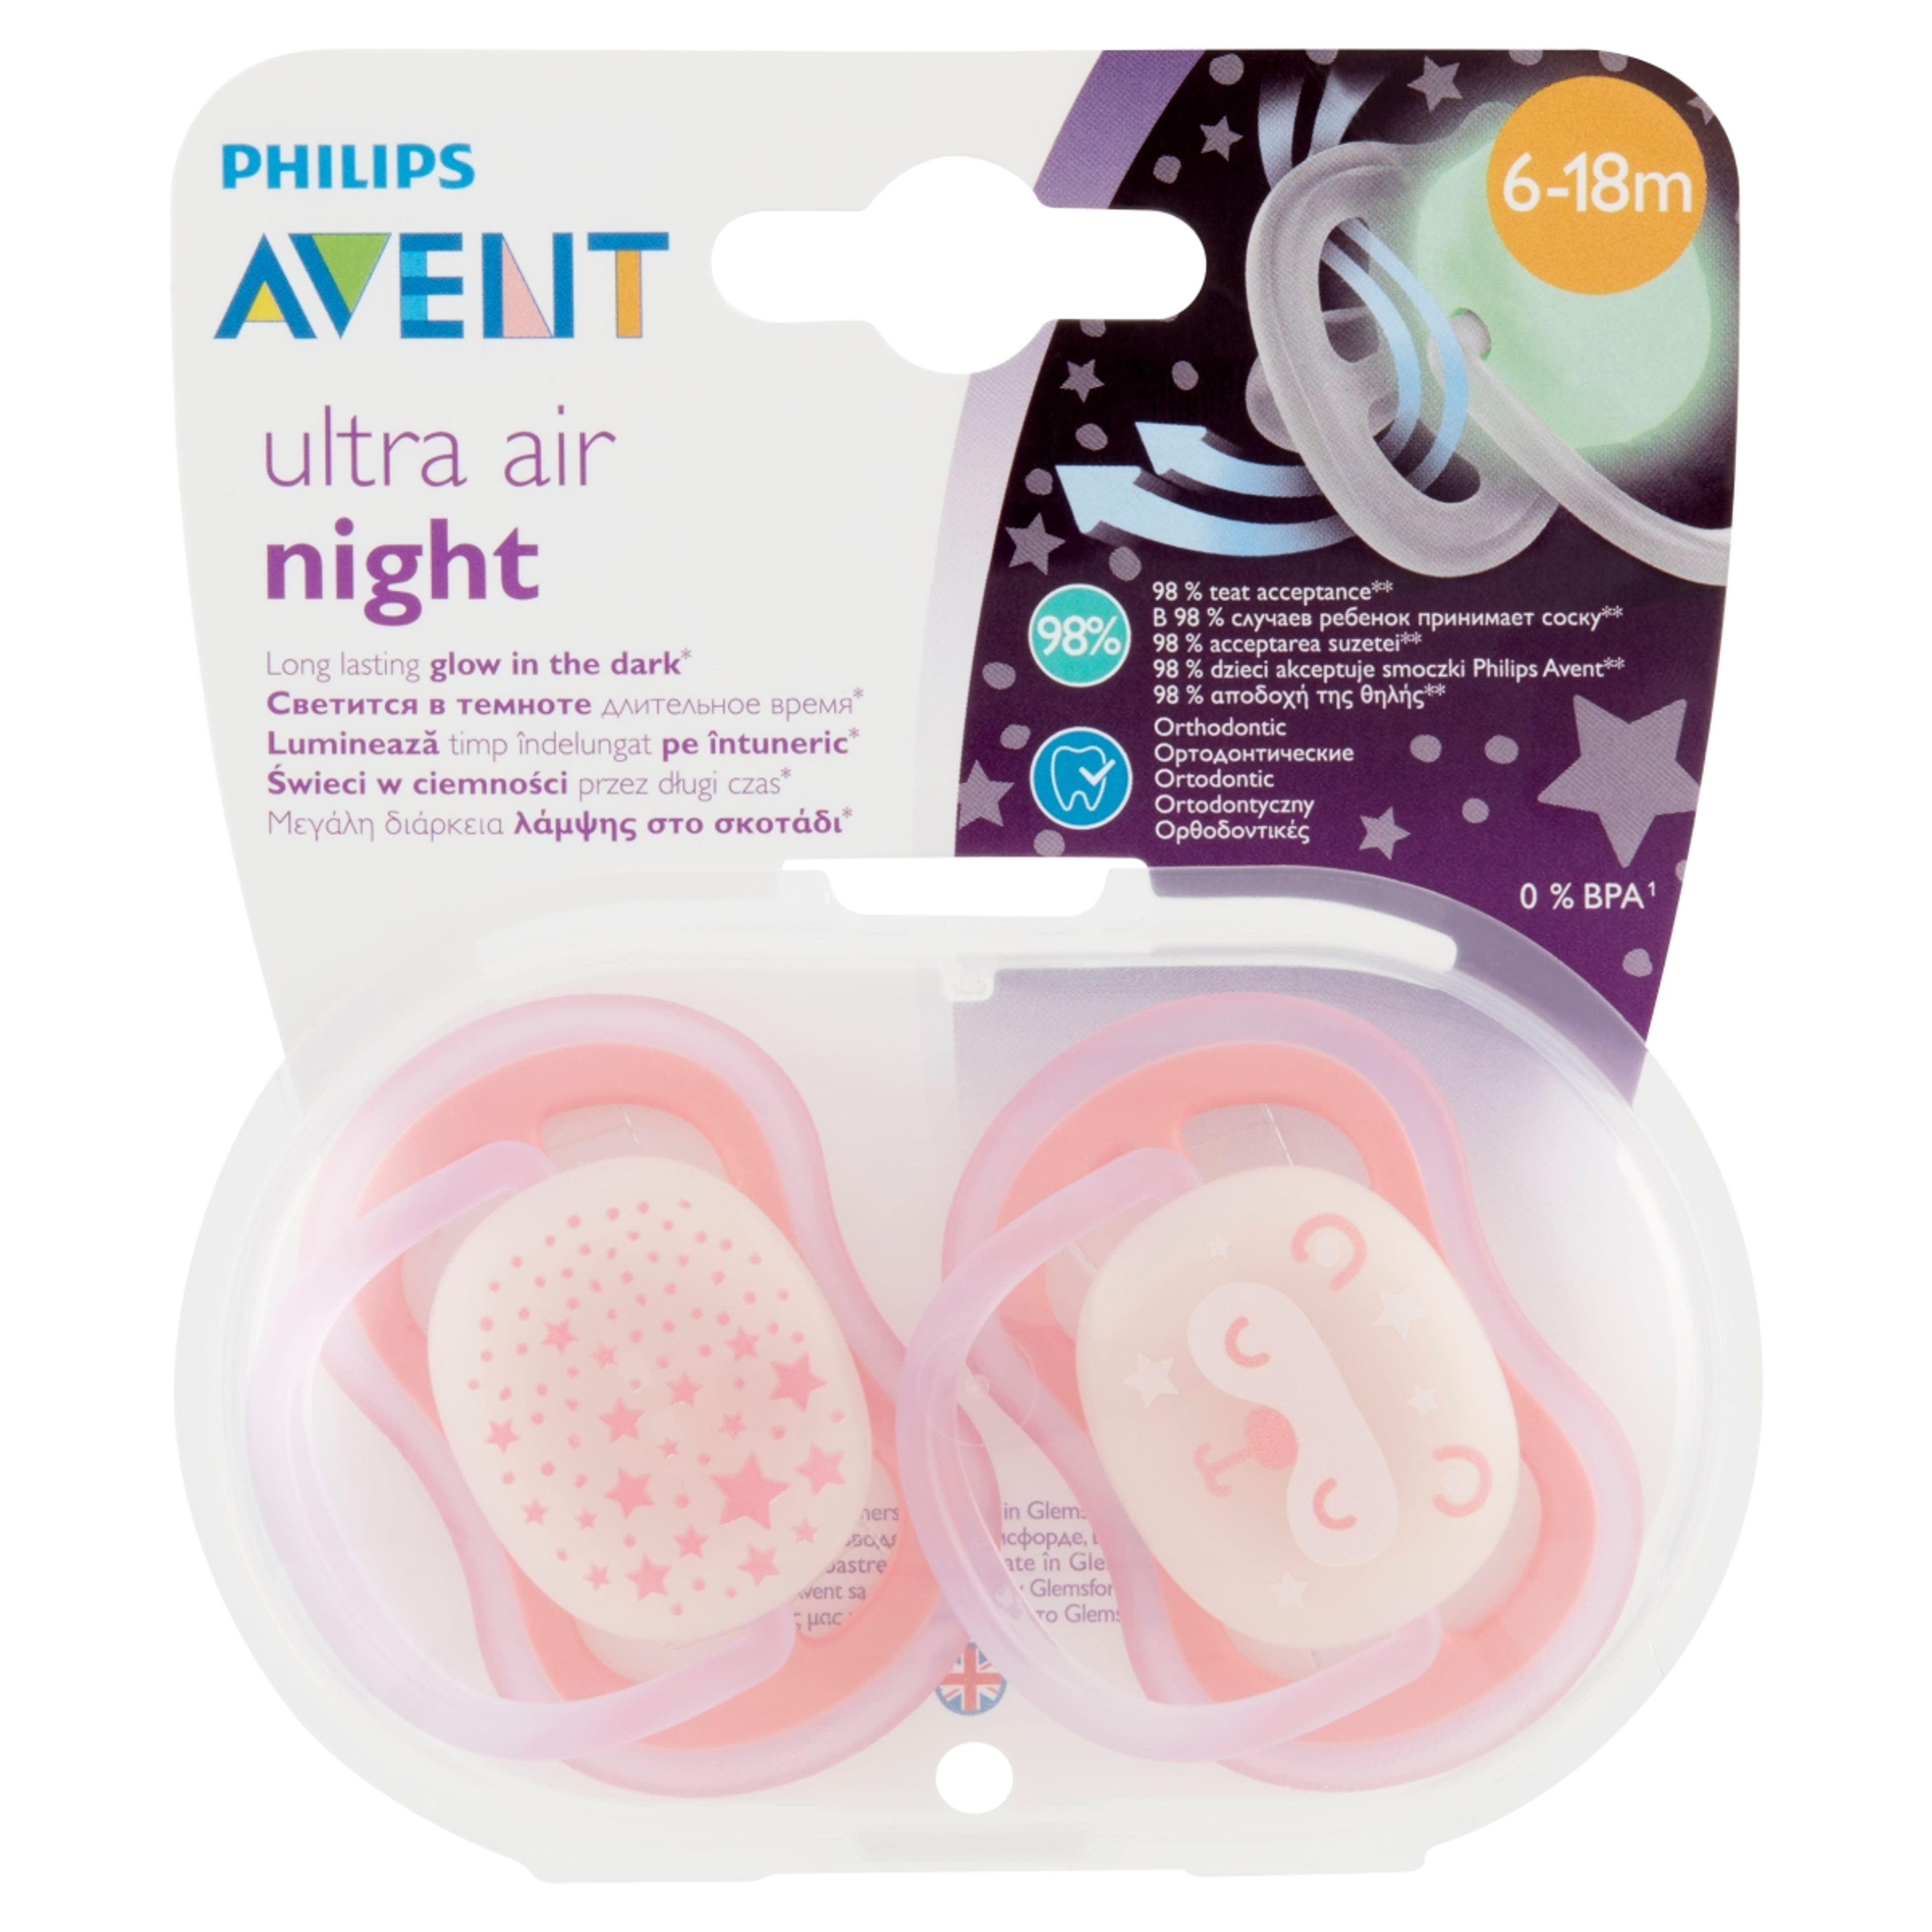 Philips Avent Ultra Air éjszakai játszócumi 6-18 hónapos korig - 2 db